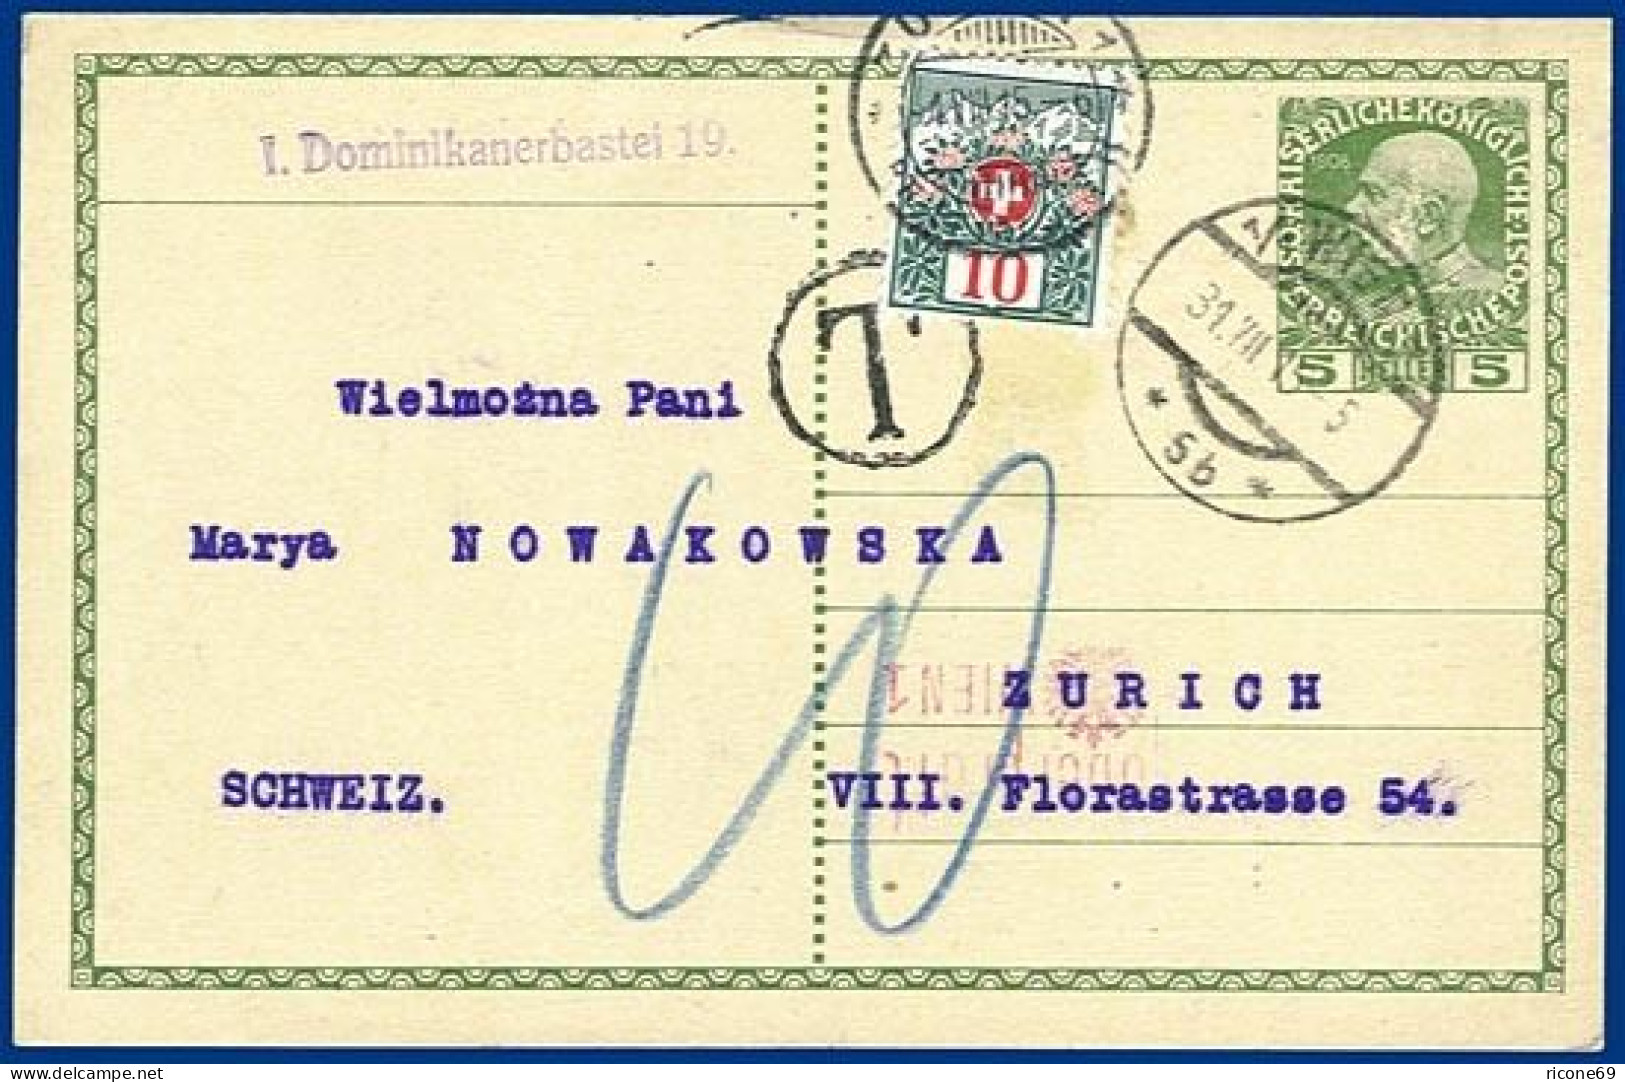 Österreich 1915, Ganzsache V. Wien  M. Schweiz Portomarke. #S224 - Cartas & Documentos